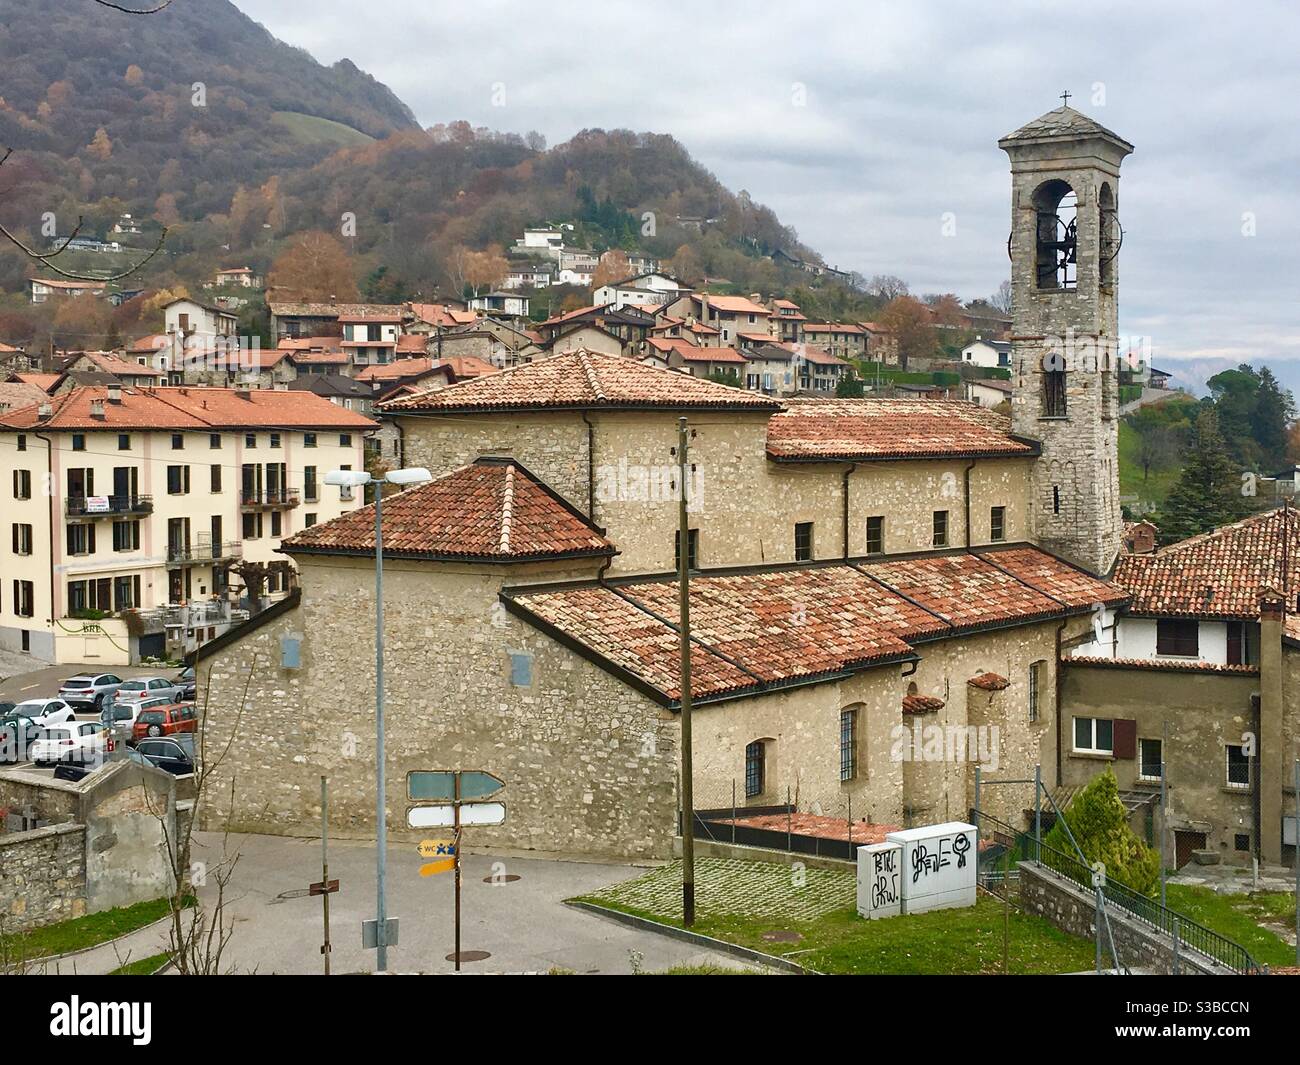 Town Bre Pase, Monte Bre, Lugano, Ticino, Switzerland Stock Photo